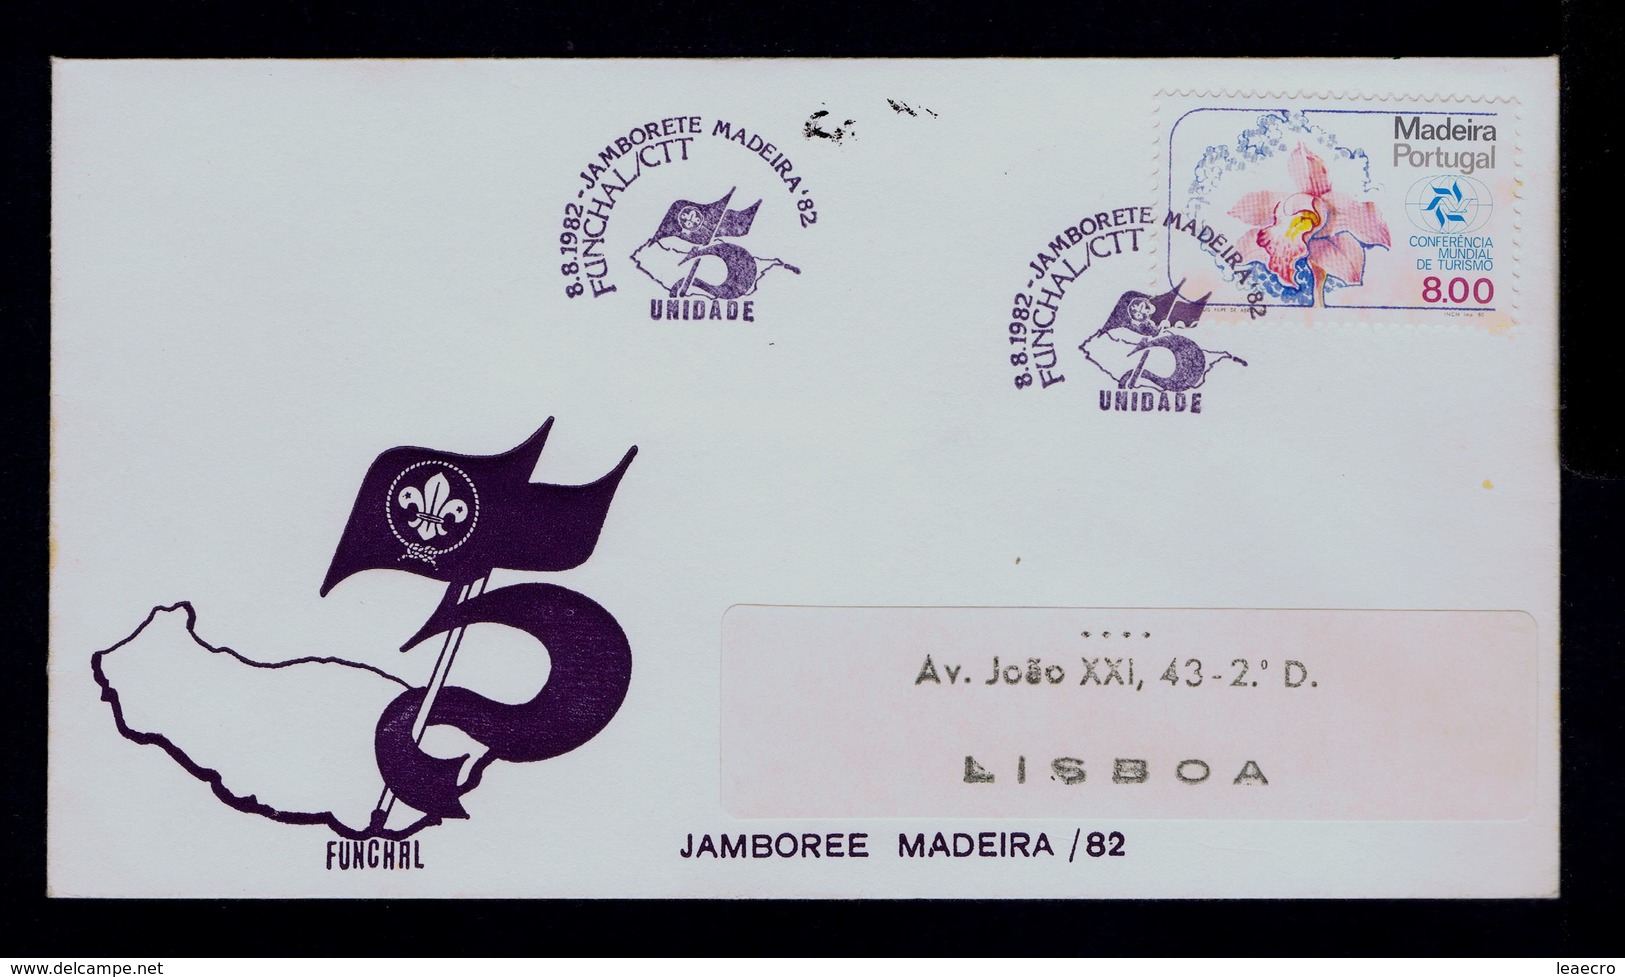 JAMBORETE Madeira Island CNE 75th UNIDADE Scouting Scoutisme Portugal 1982 Scouts Boyscouts (pmk Special 2R-cover) G3633 - Cartas & Documentos